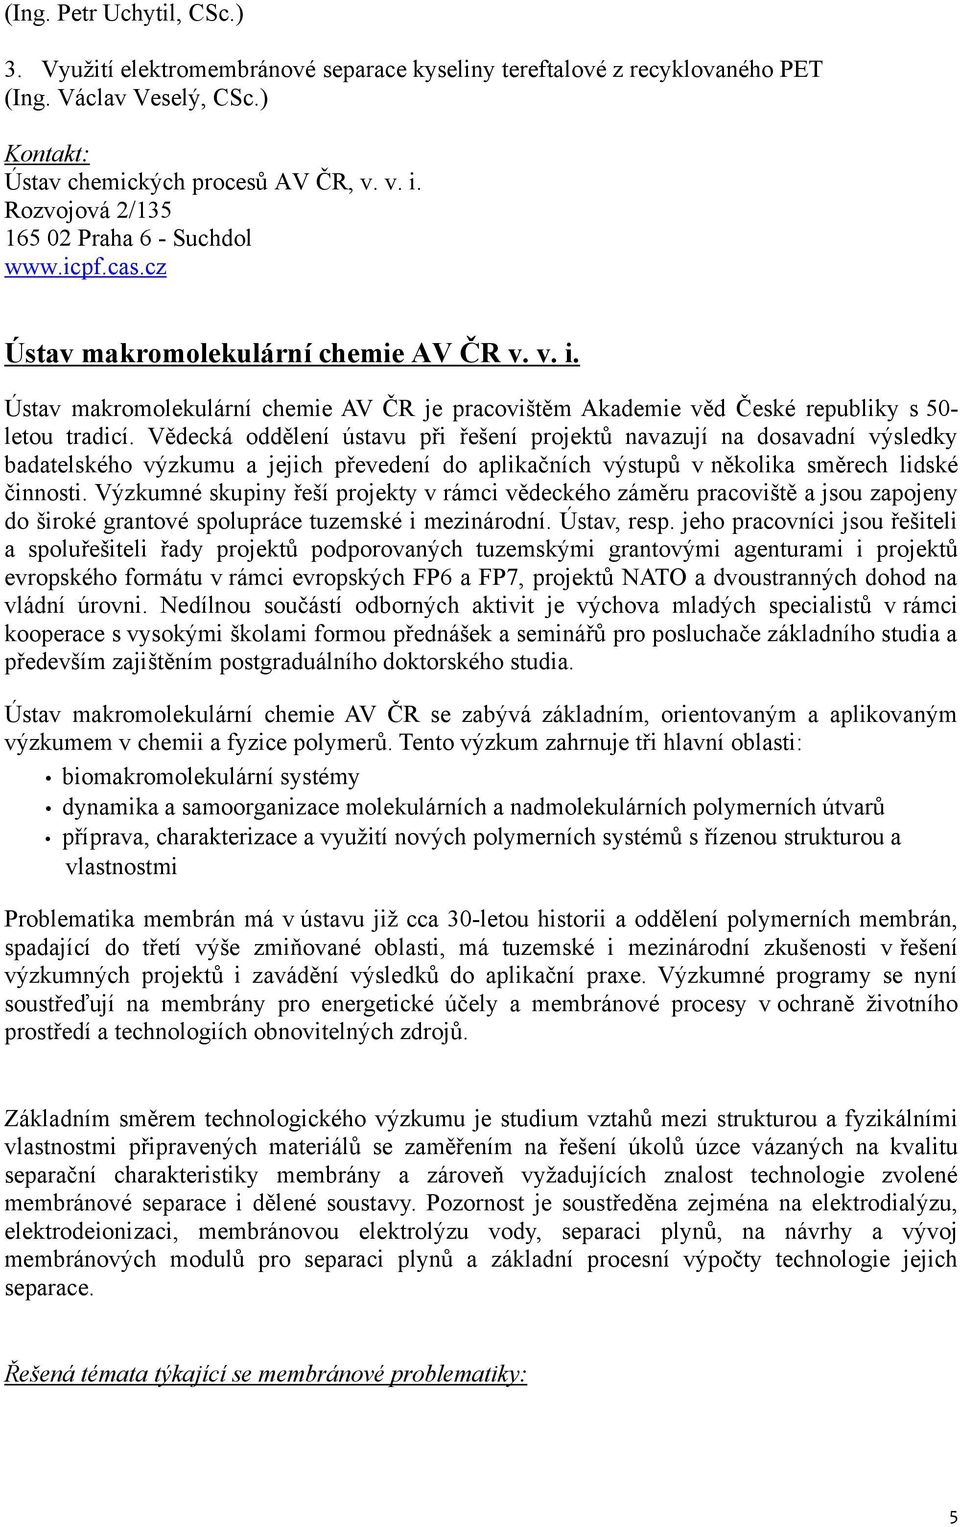 Ústav makromolekulární chemie AV ČR je pracovištěm Akademie věd České republiky s 50- letou tradicí.